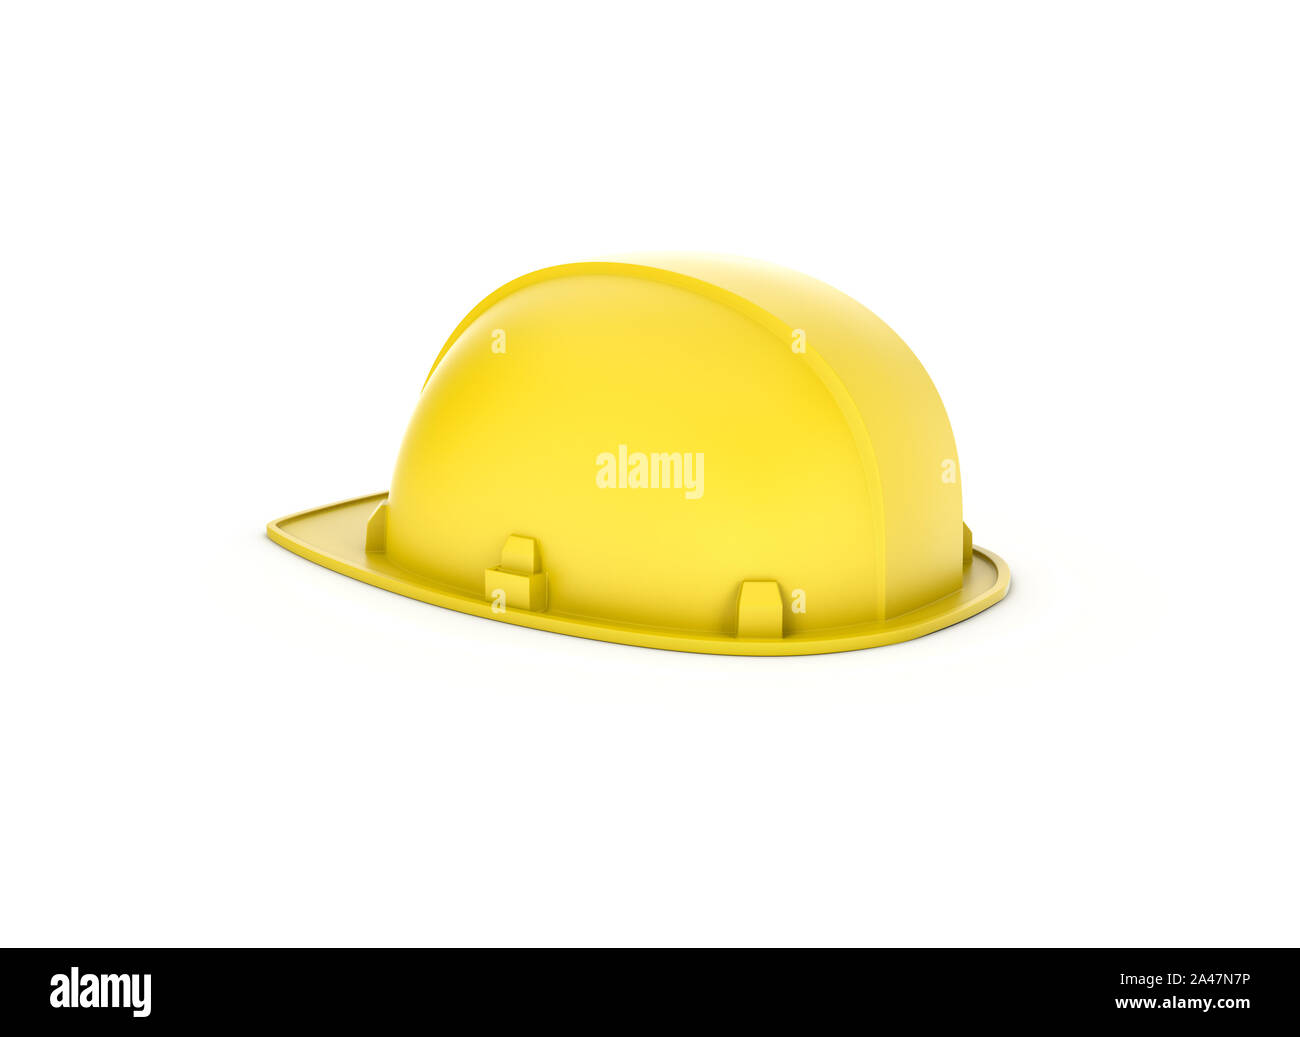 3D-Rendering von einem gelben Schutzhelm isoliert auf den weißen Hintergrund. Bau und Konstruktion. 3D-Modellierung. Sicherheit am Arbeitsplatz. Baustelle. Stockfoto